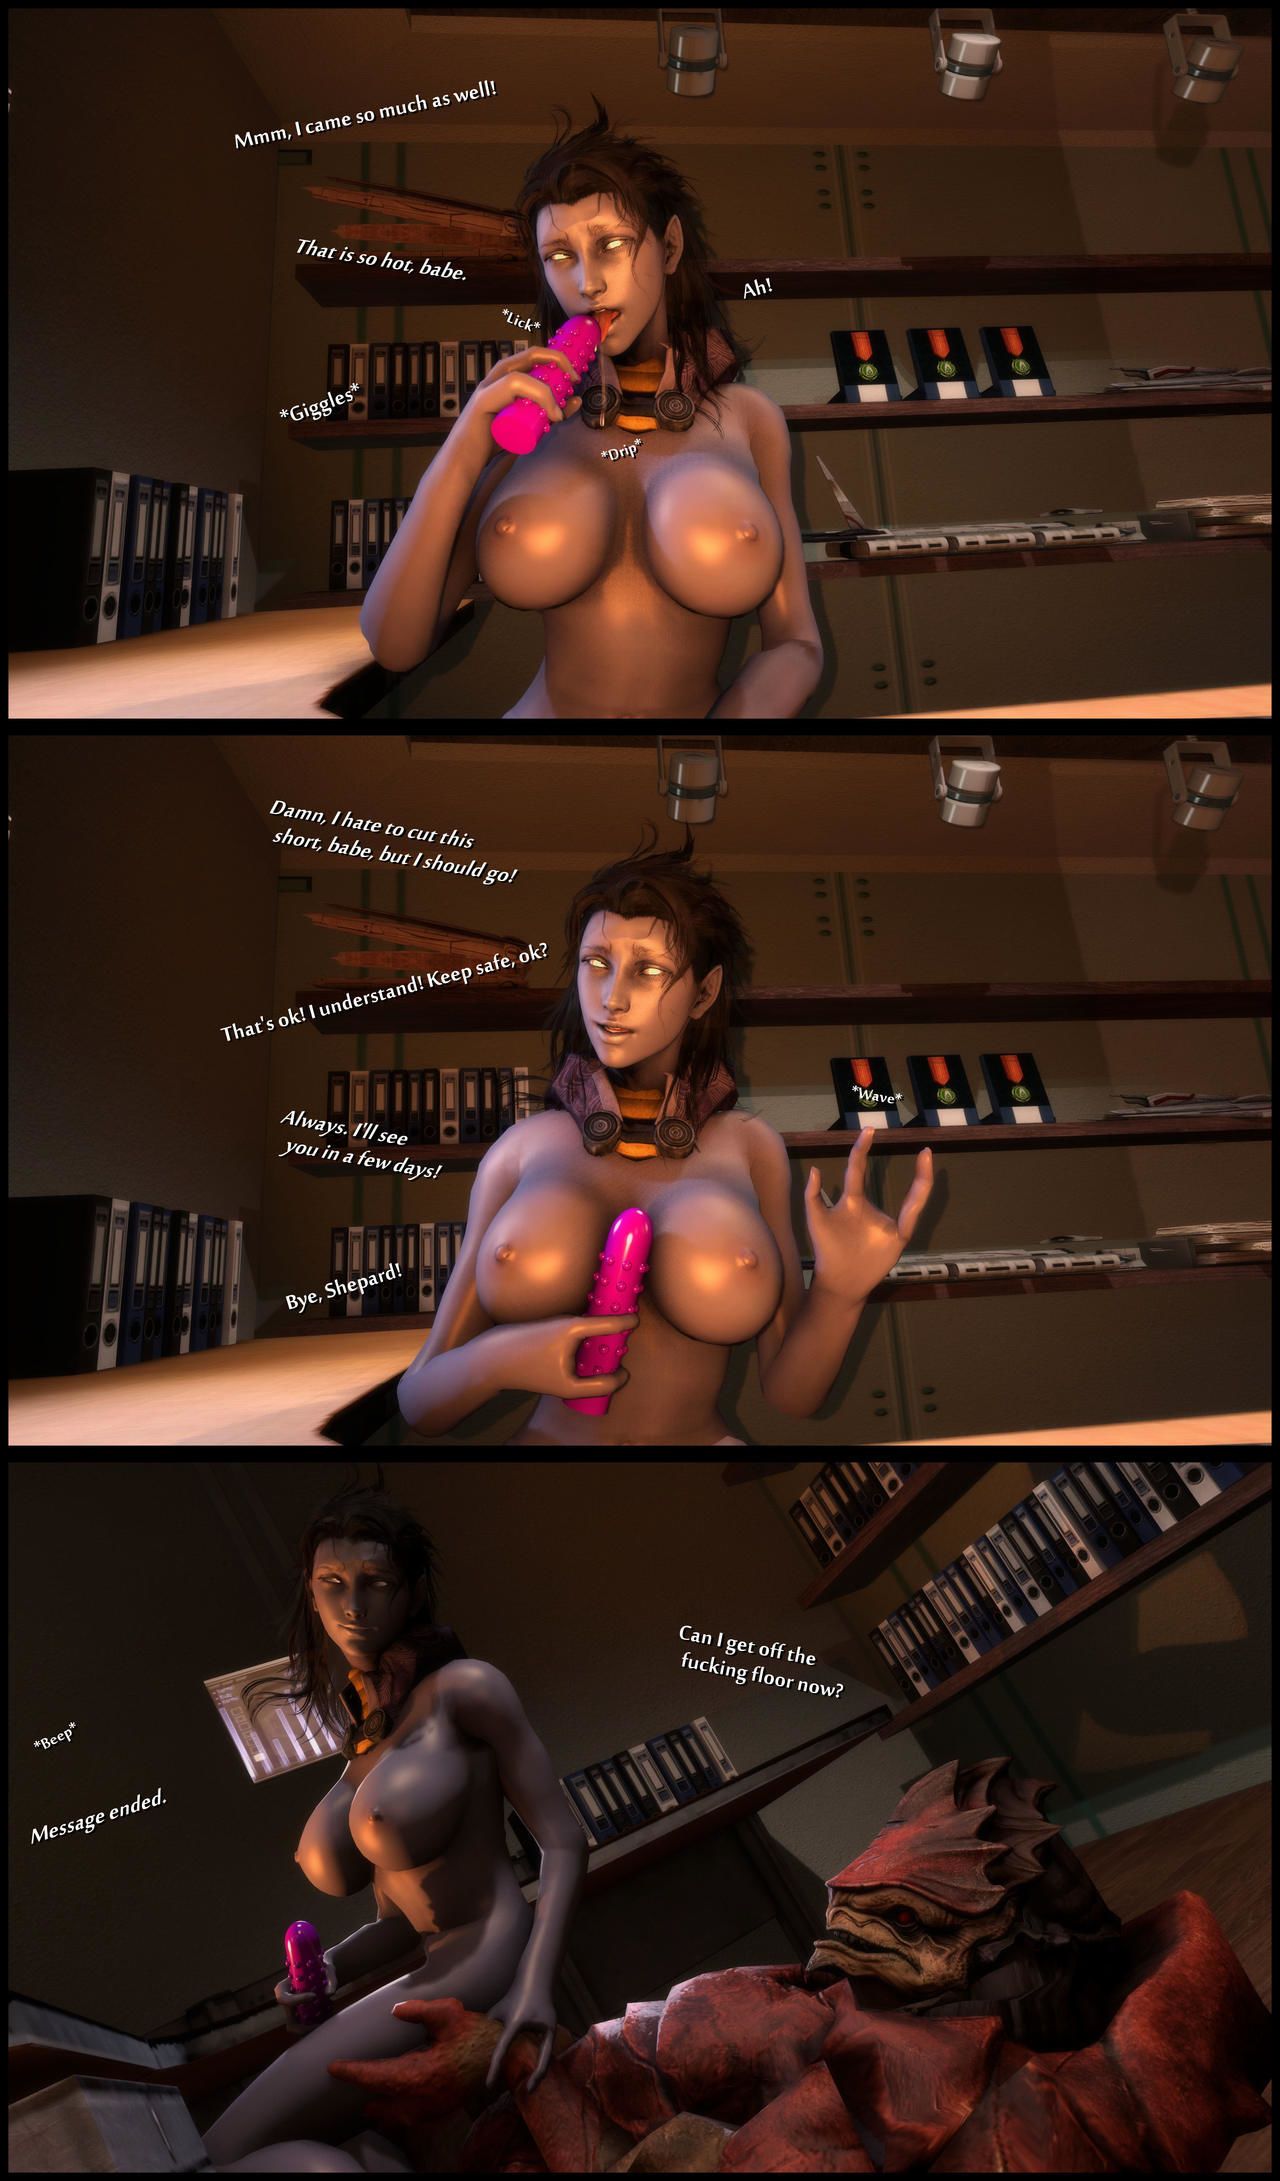 Sexy Aliens From Mass Effect - foab30] Size Queen (Mass Effect) - part 3 at 3d Sex Pics